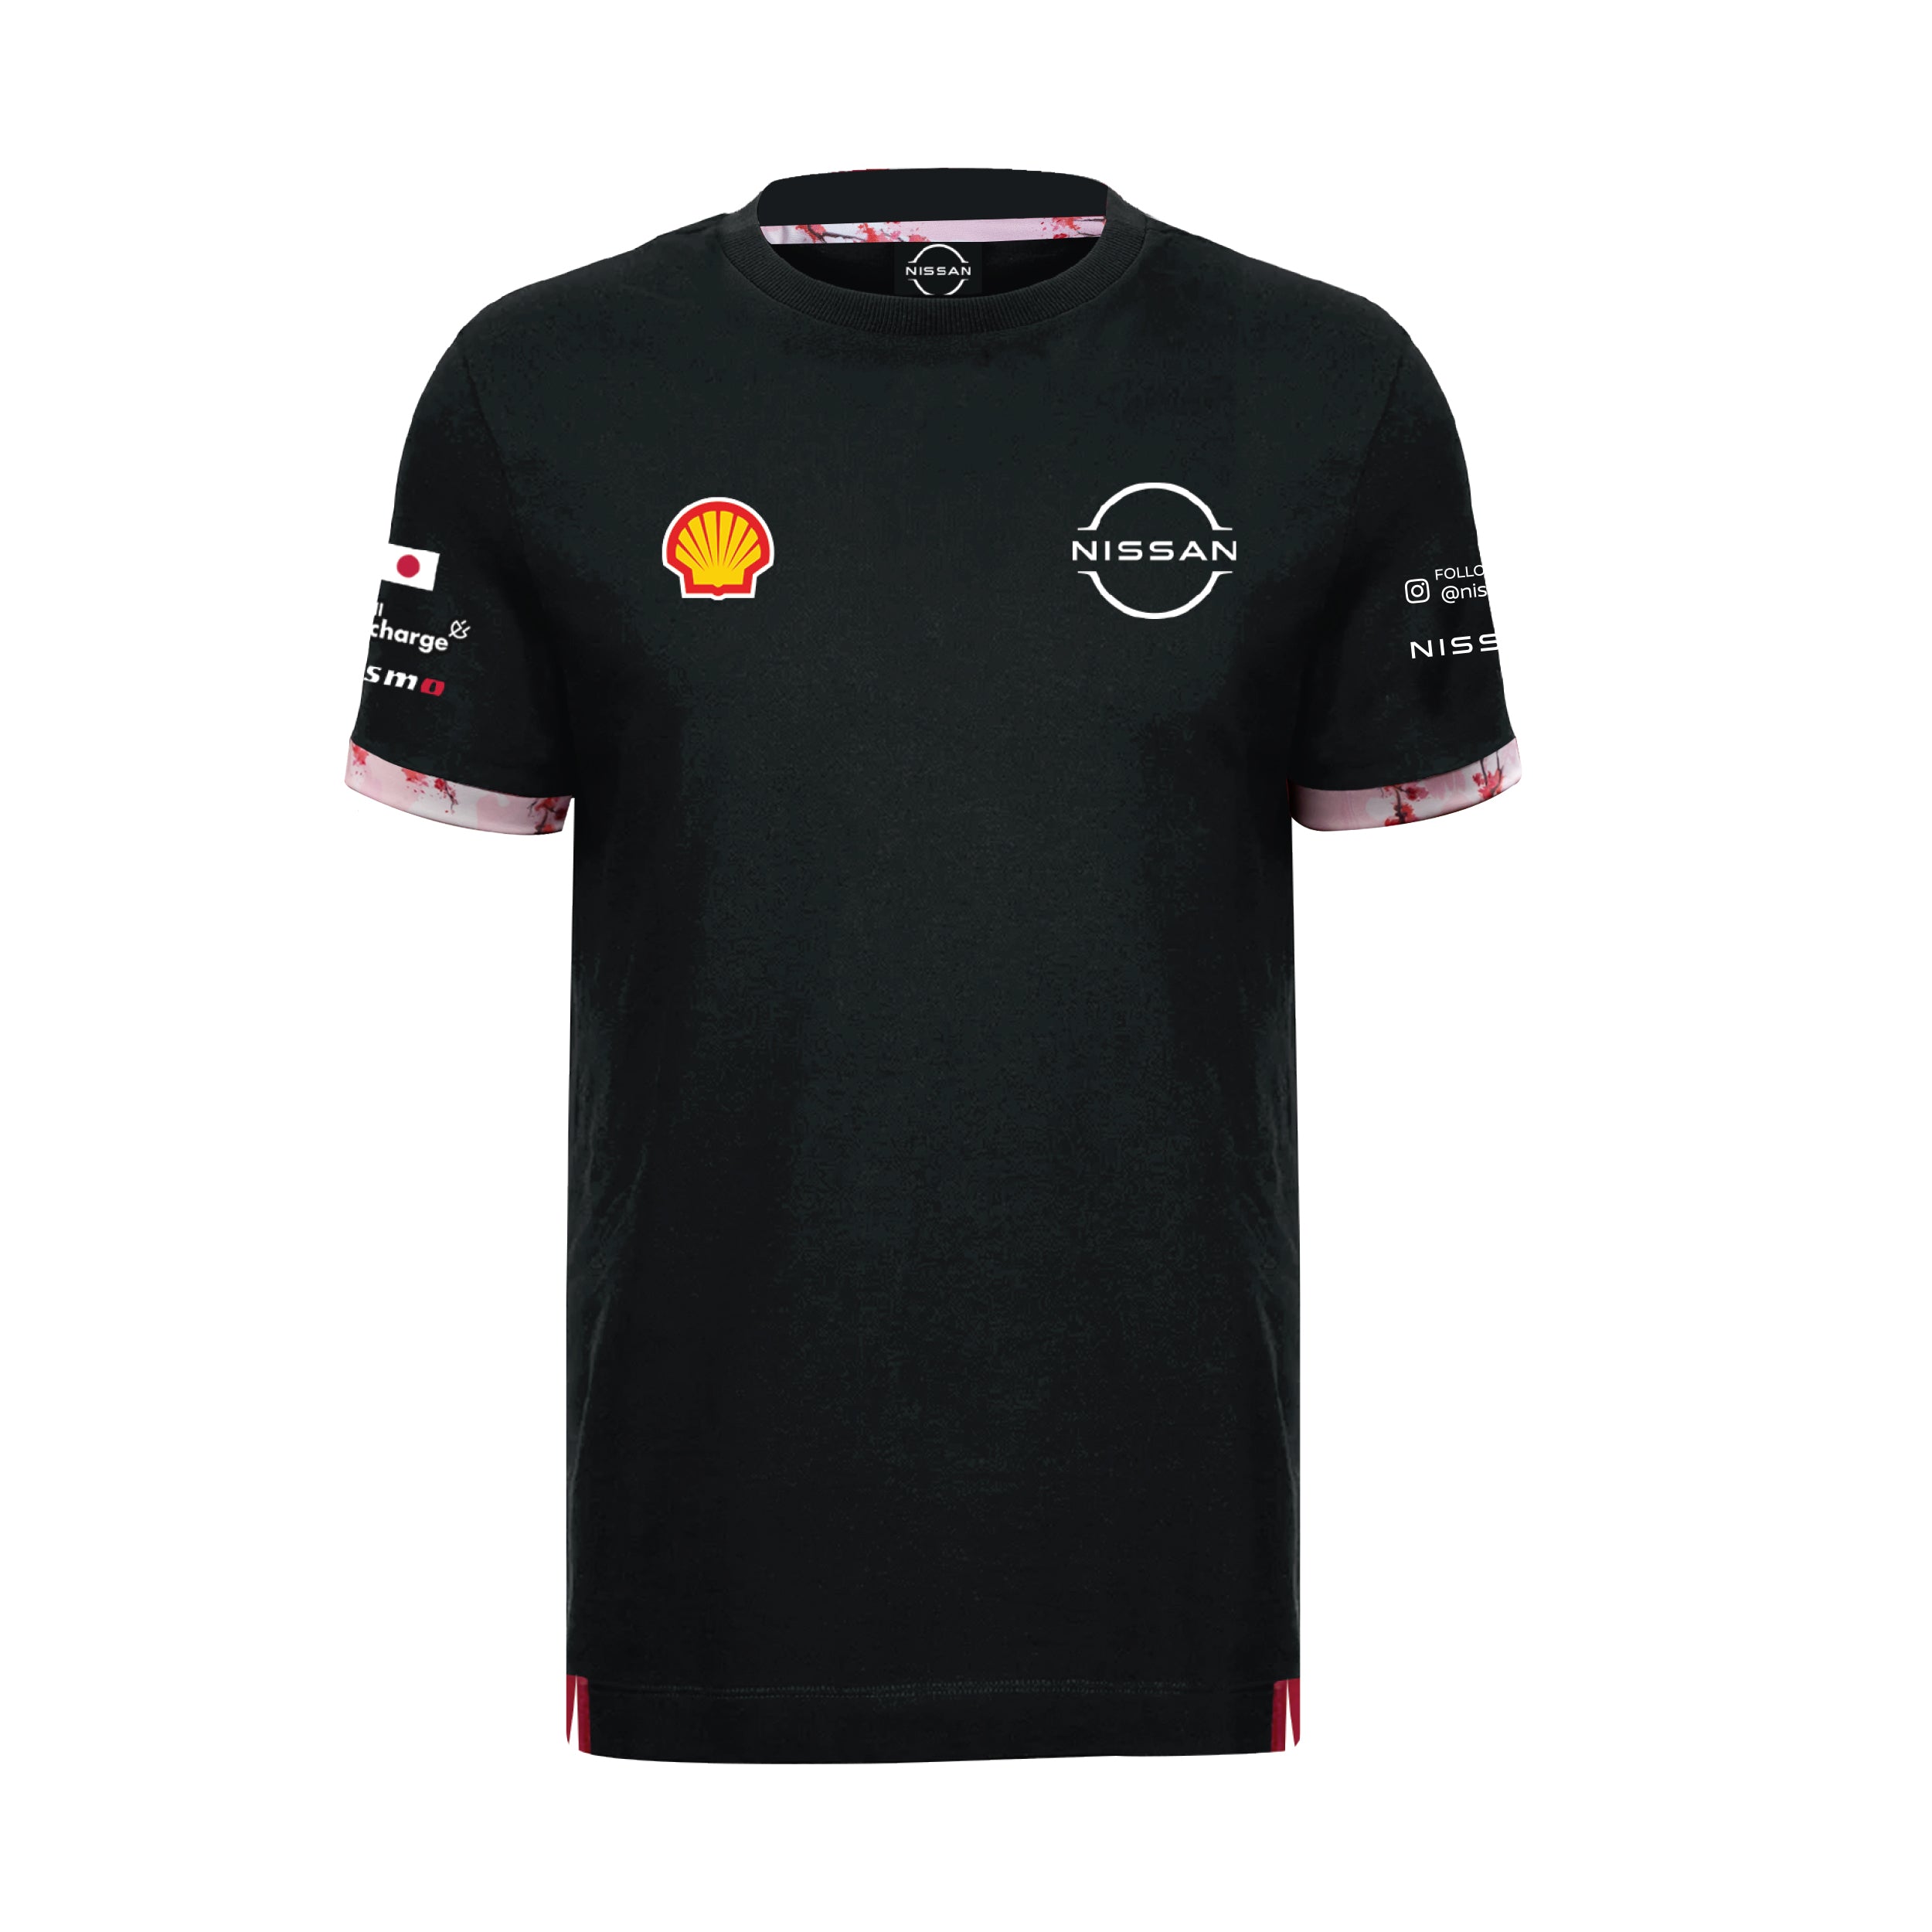 Nissan Formula E Team Replica T-shirt Unisex Black